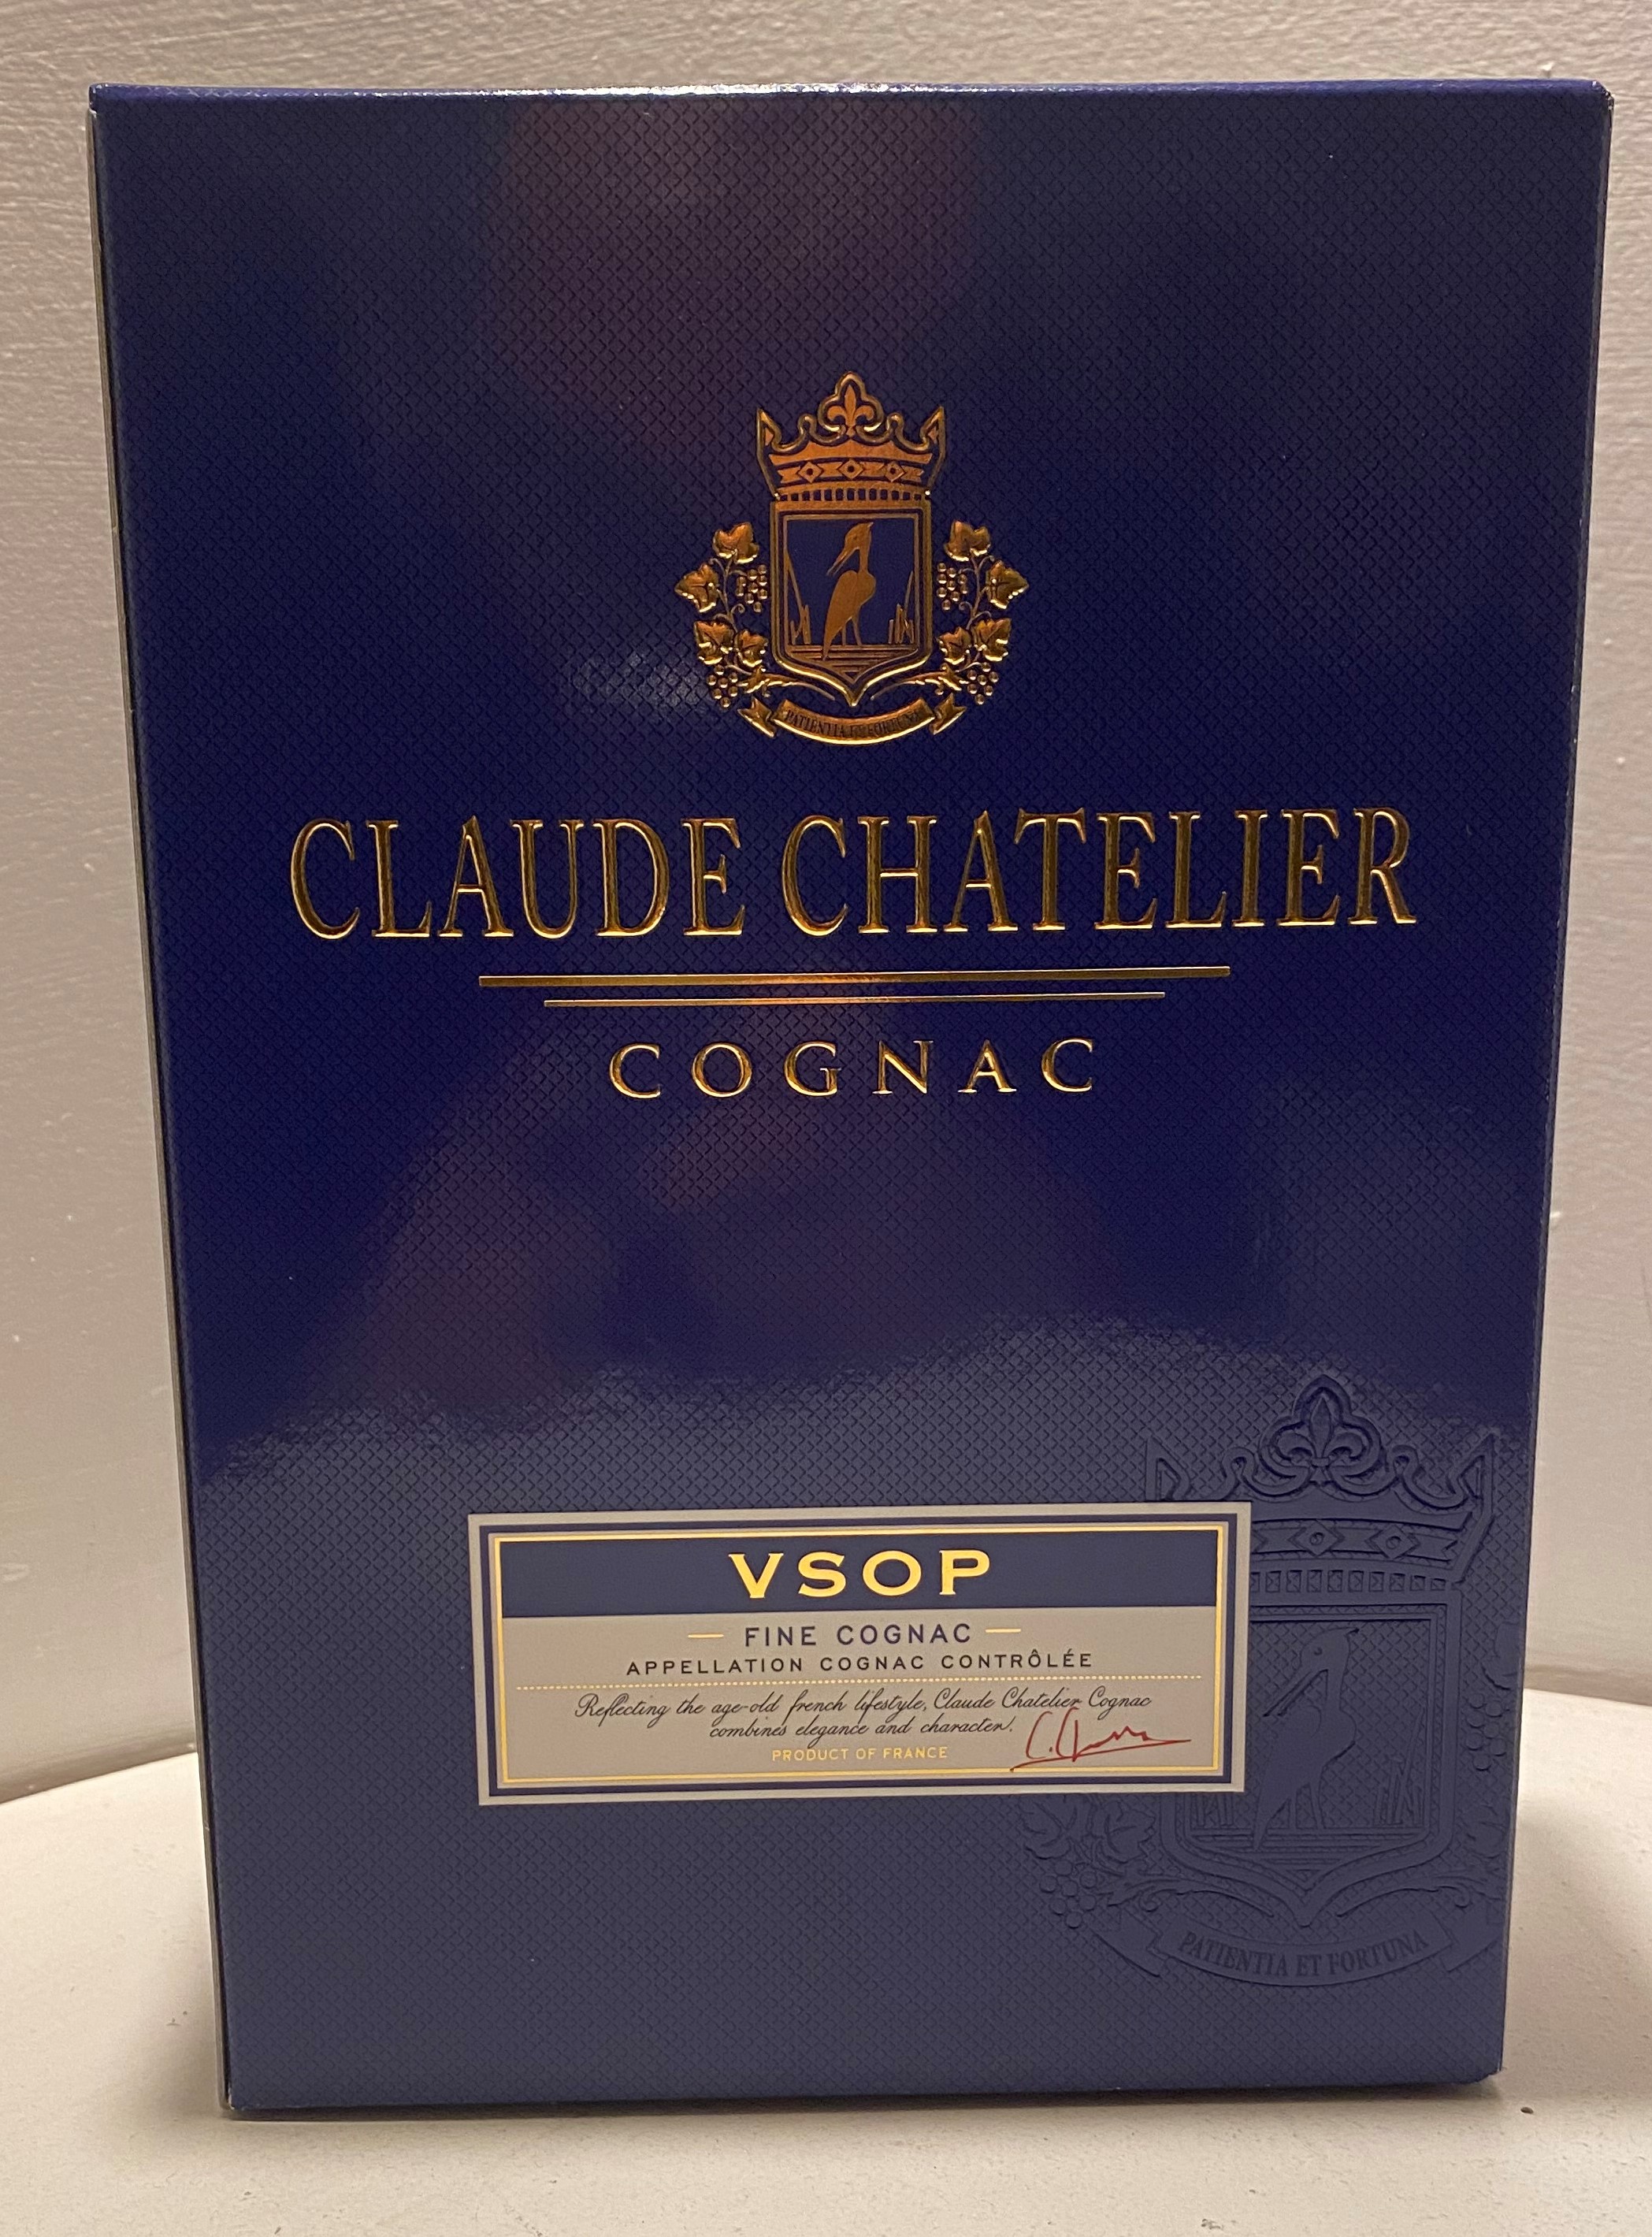 signatory-shop - Claude Chatelier VSOP Cognac 40% Vol